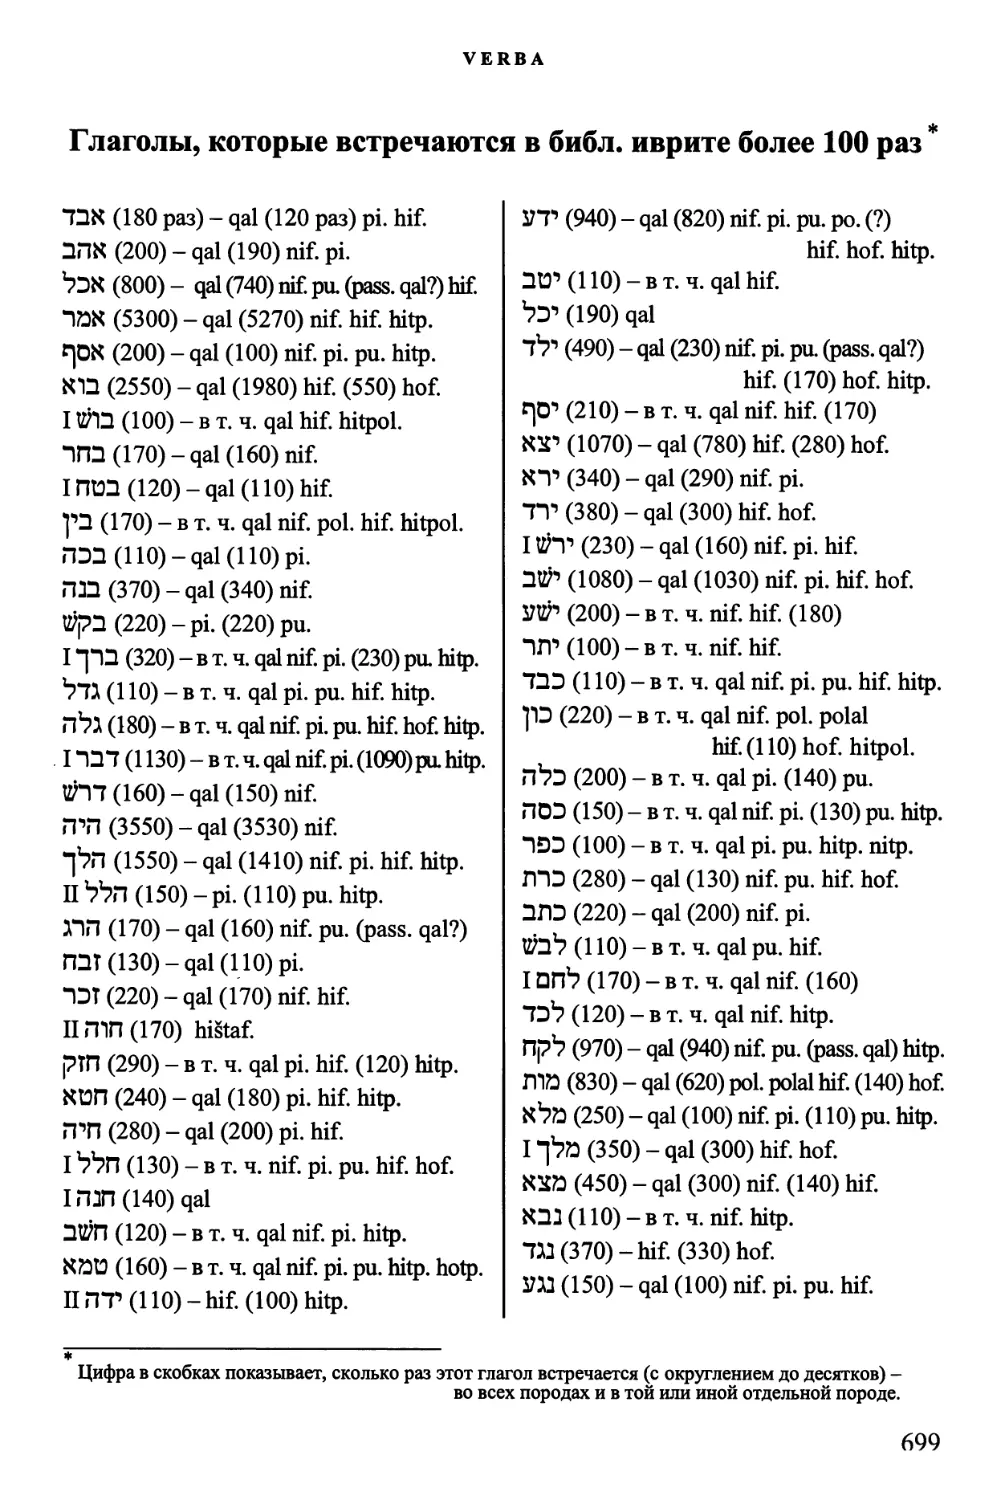 Глаголы, которые встречаются более 100 раз